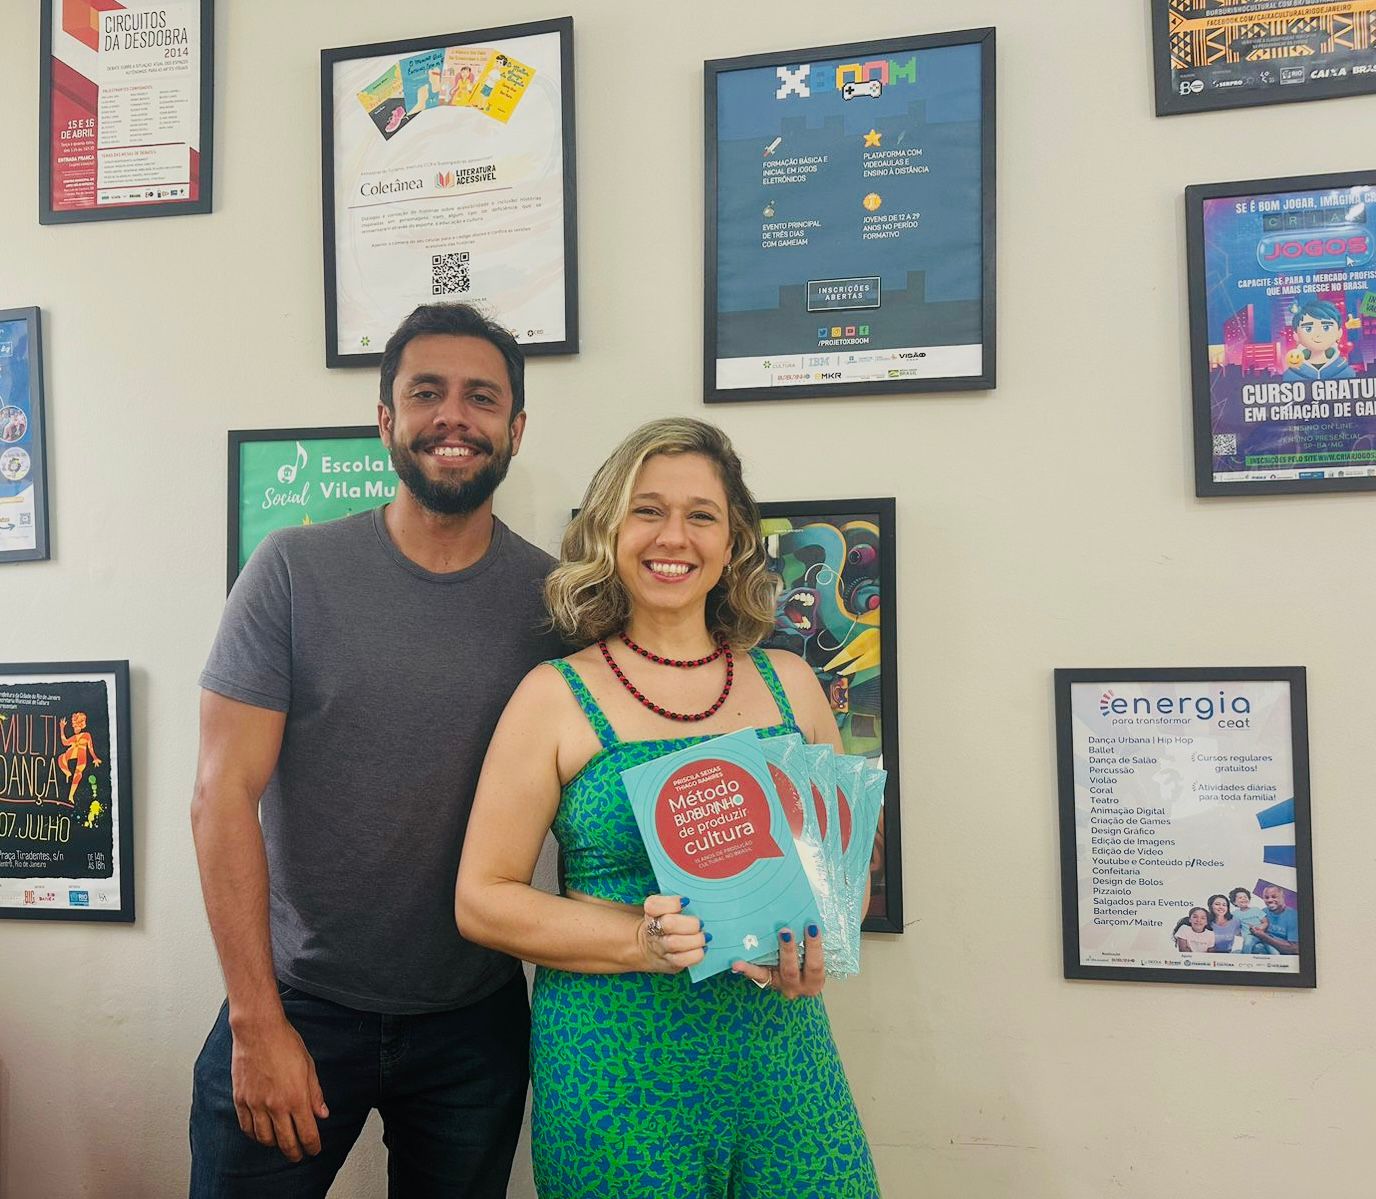 Gestores Thiago Ramires e Priscila Seixas são os autores do livro "Método Burburinho de Produzir Cultura" (Foto: Divulgação)